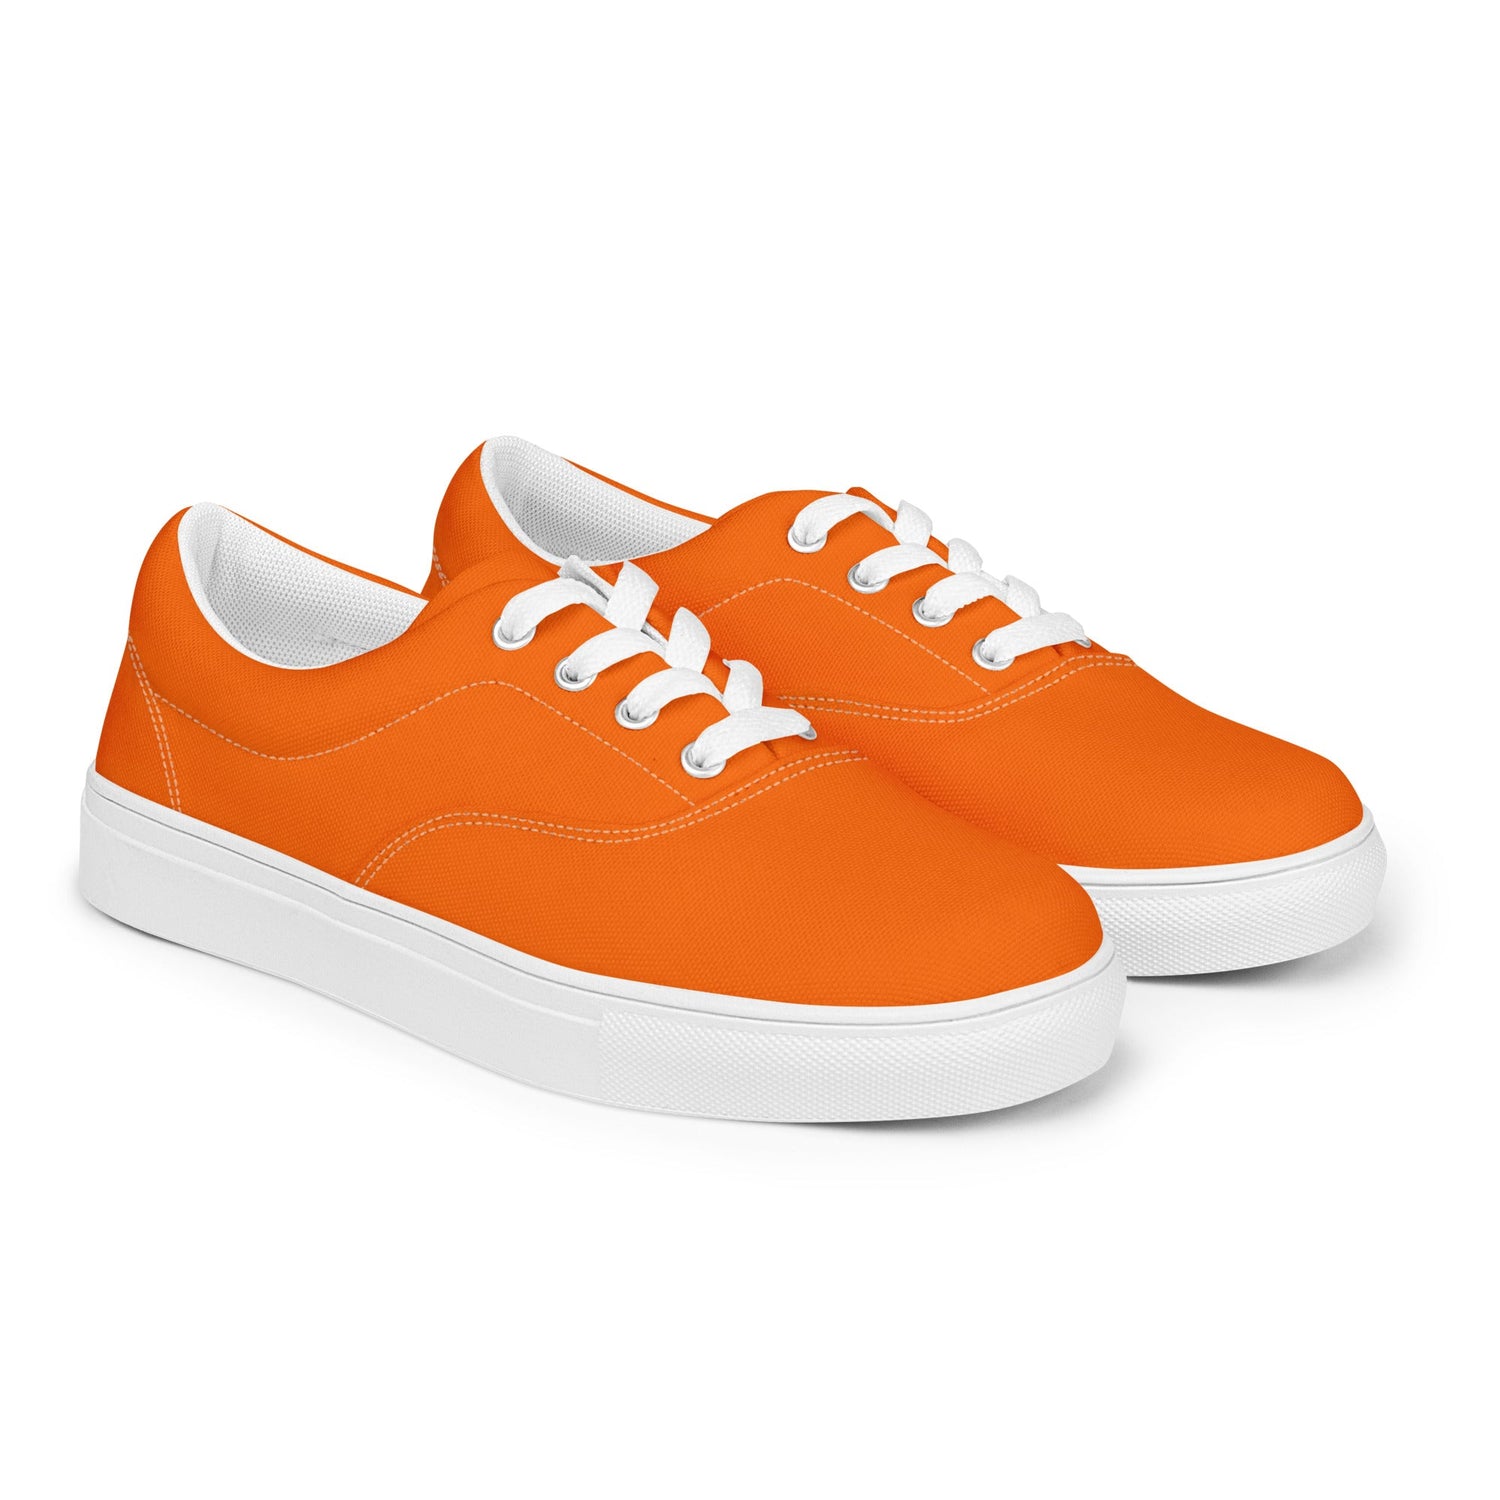 klasneakers Women’s lace-up canvas shoes - Electric Orange